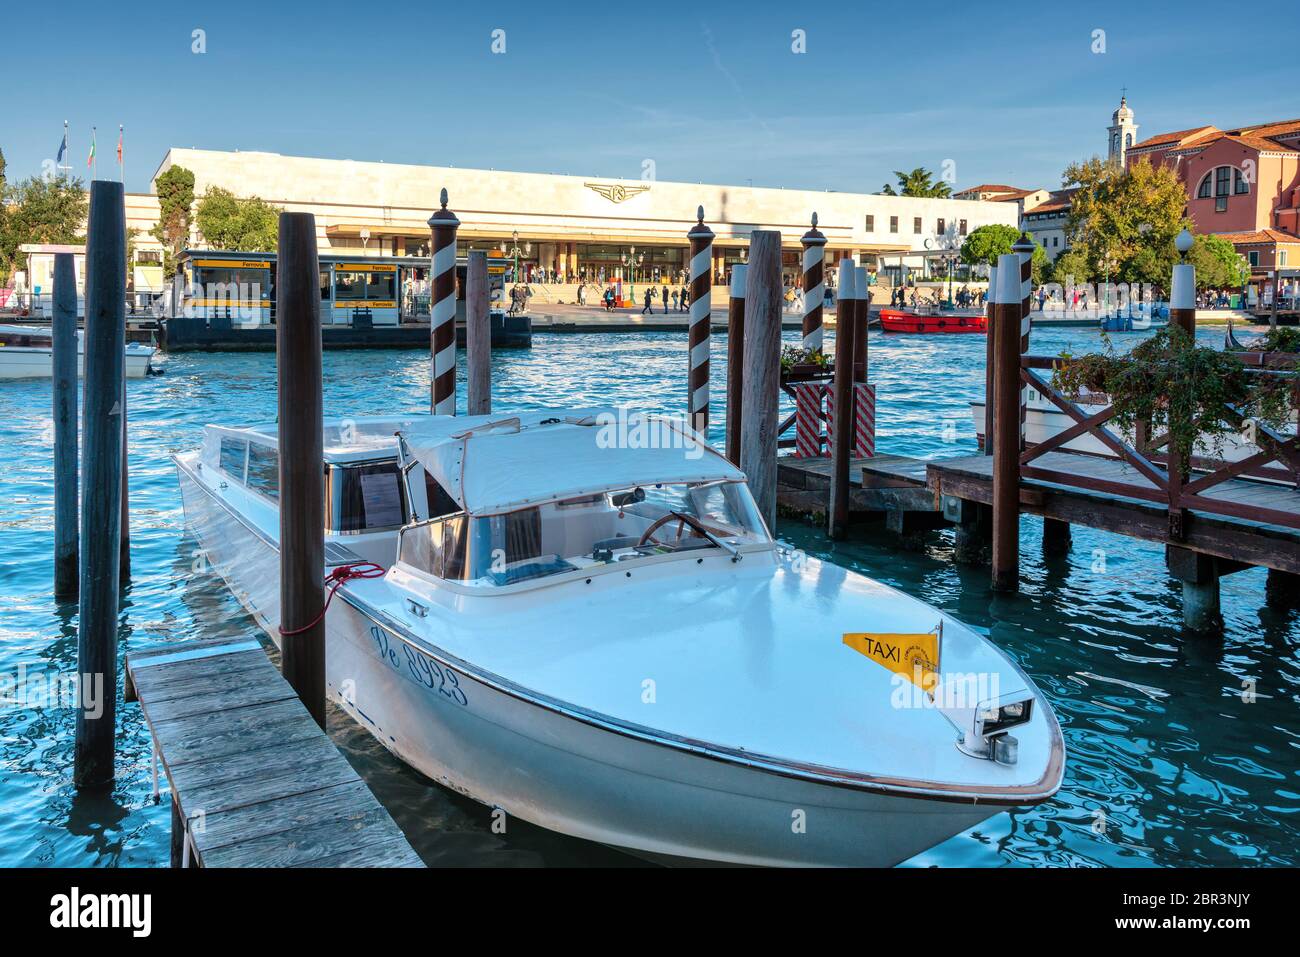 Immagine simbolica di Venezia: Le gondole ormeggiate tra i pali del Canal Grande, di fronte alla stazione ferroviaria di Santa Lucia Foto Stock